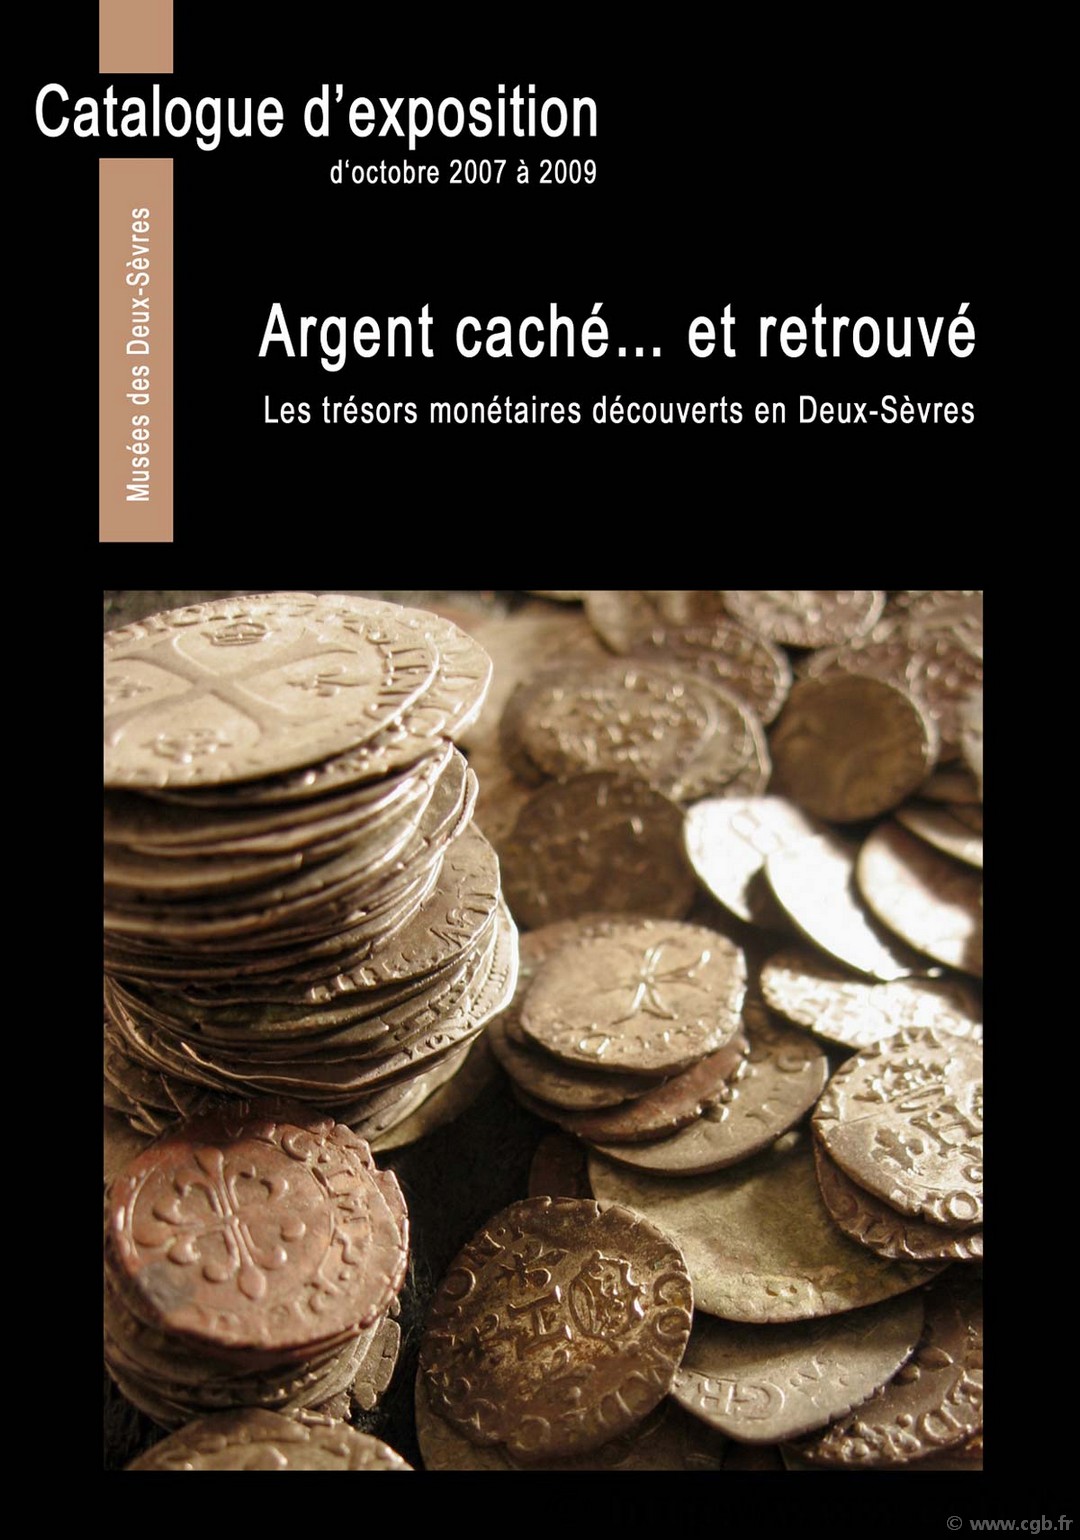 Argent caché... et retrouvé - Les trésors monétaires découverts en Deux-Sèvres (catalogue d exposition) Sous la direction de CAVAILLES M., CLAIRAND A., GENDRON Ch., HIERNARD J. et TEREYGEOL F.